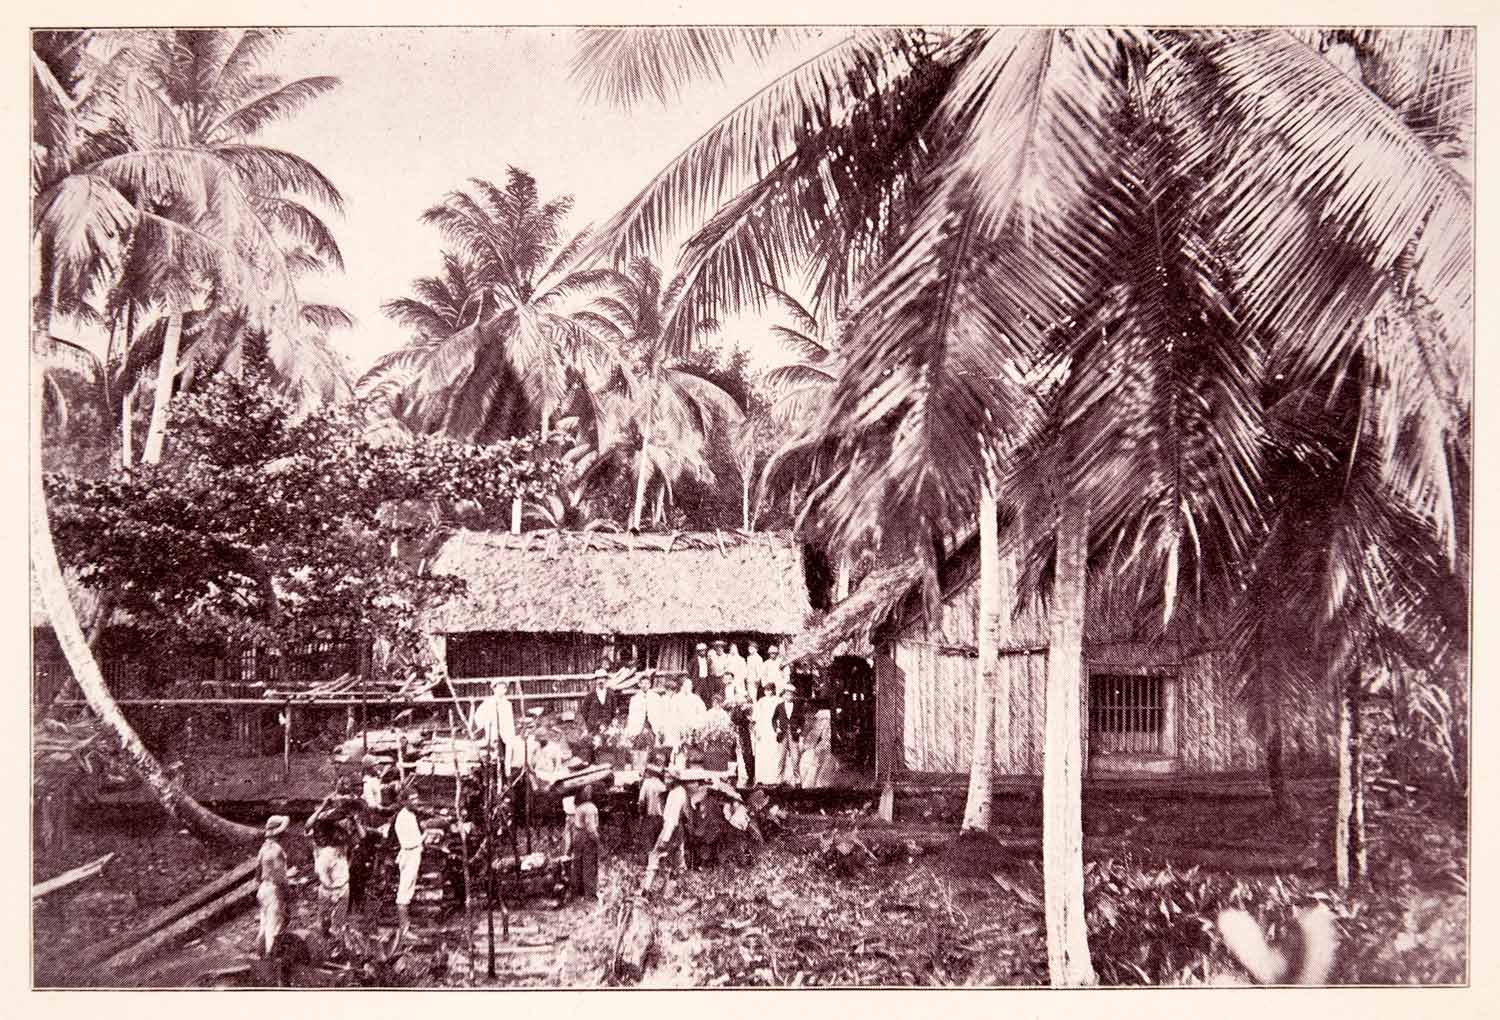 1897 Print Bolivar Venezuela Huts Rural Homes Tropical Palm Trees Historic XGQA9